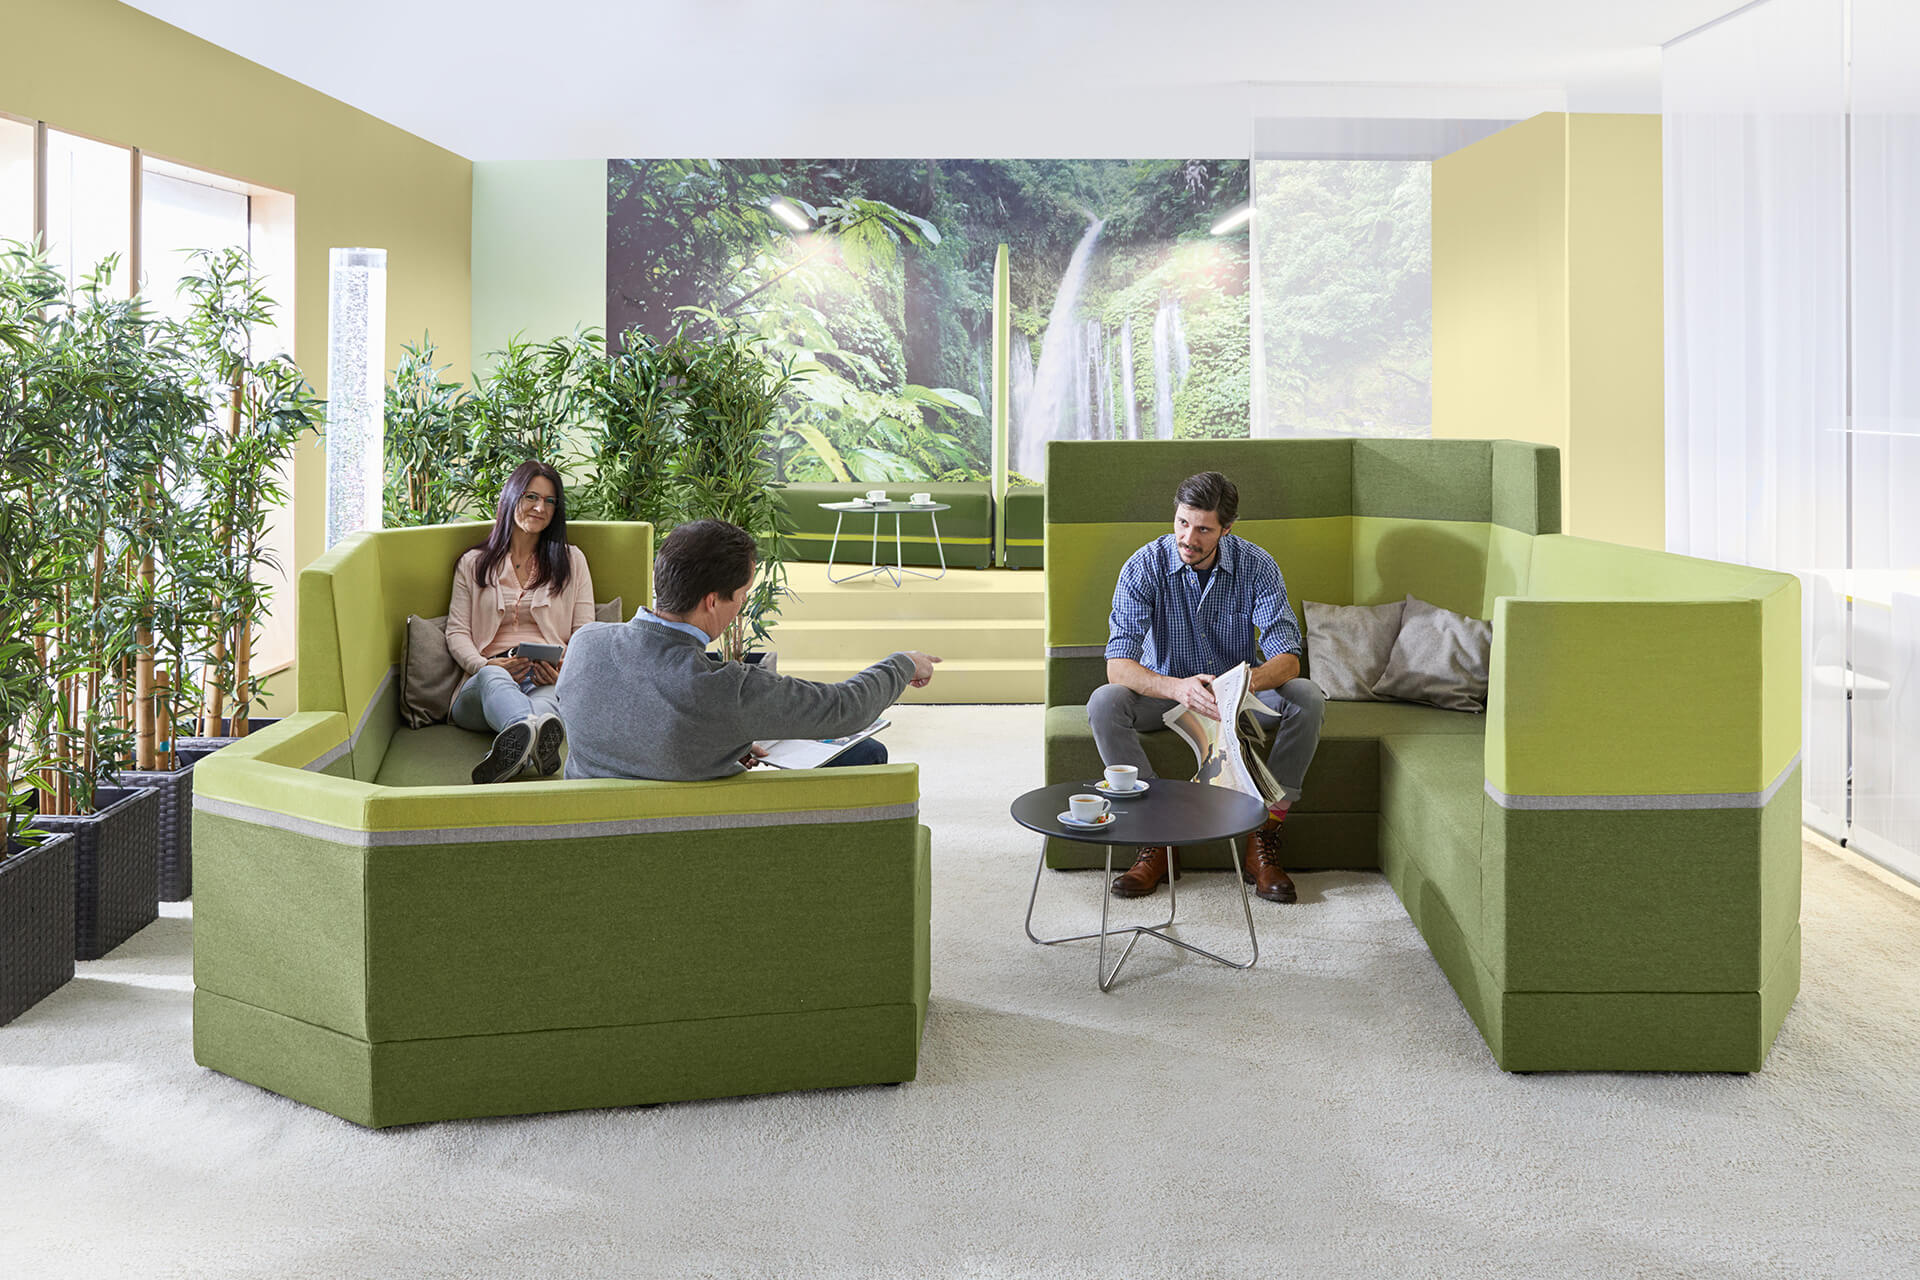 Bildung | Schule und Hort | 2 | Image | Verwaltungsräume | Frau und 2 Männer sitzen auf hellgrün - dunkelgrünen Sitzmöbel in einem Raum mit Palmen